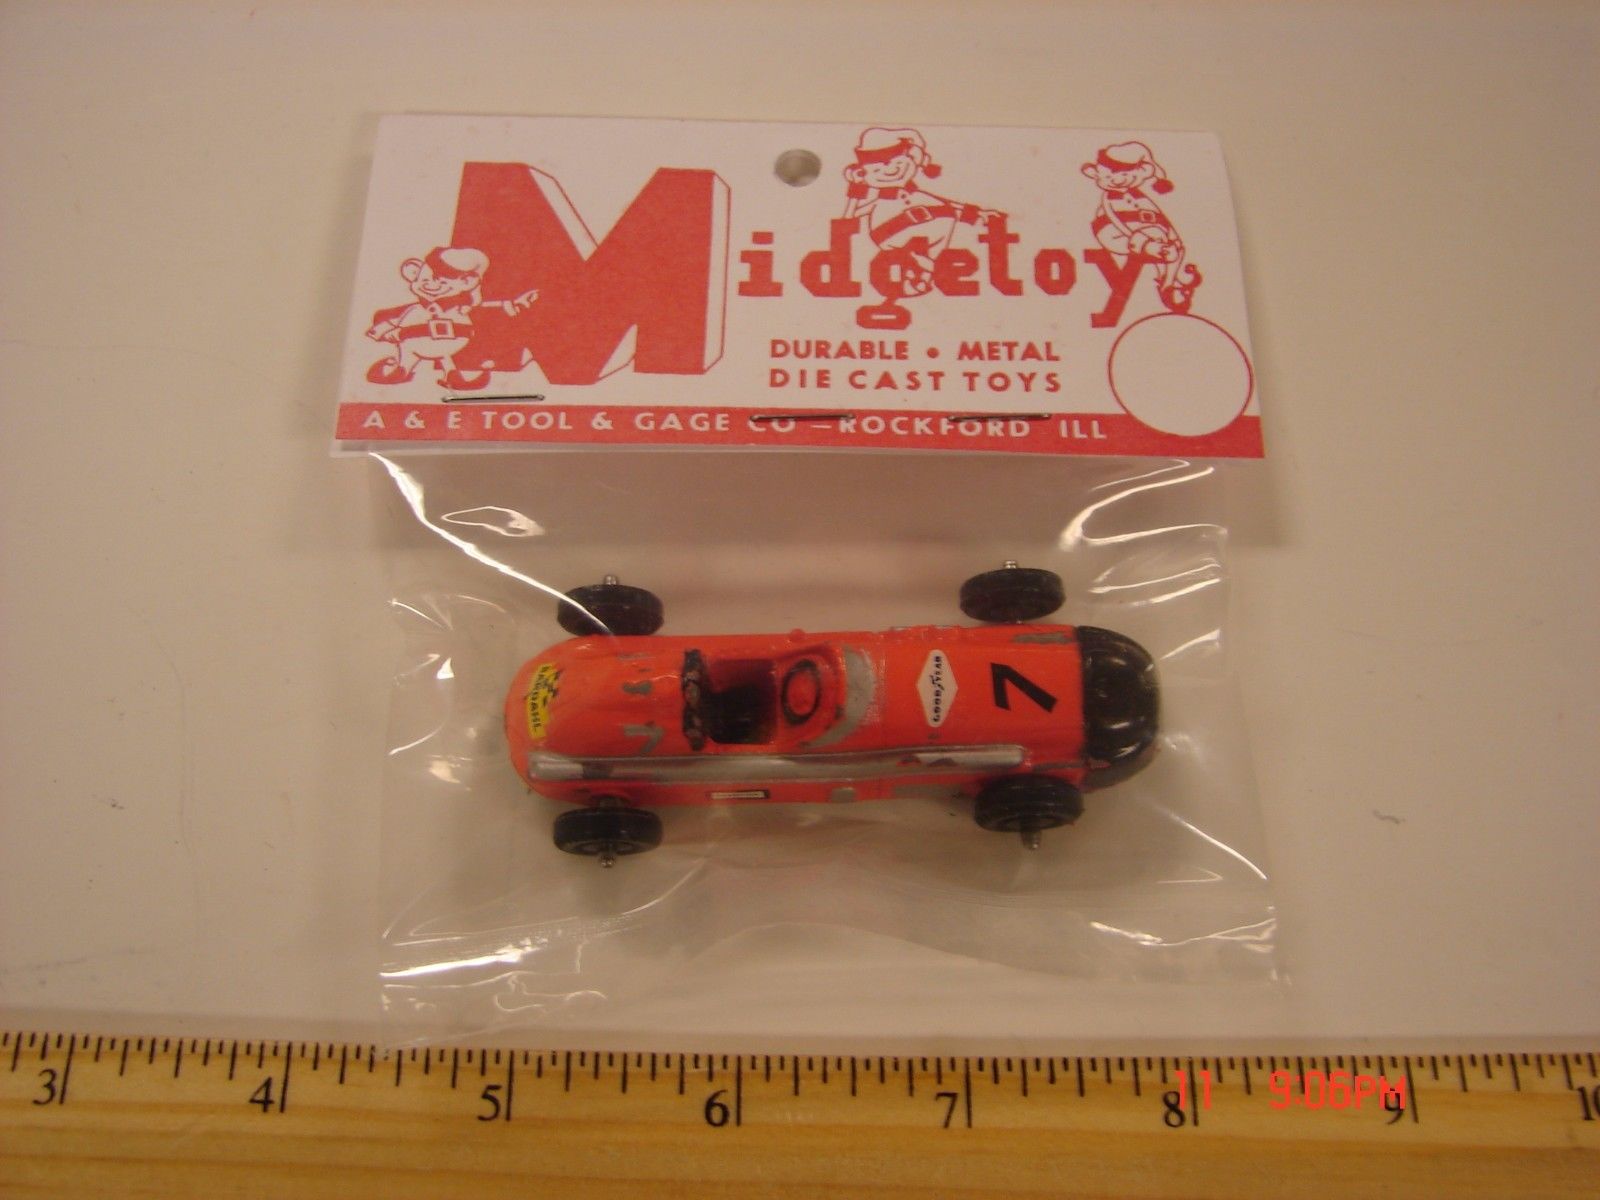 values Midget toy